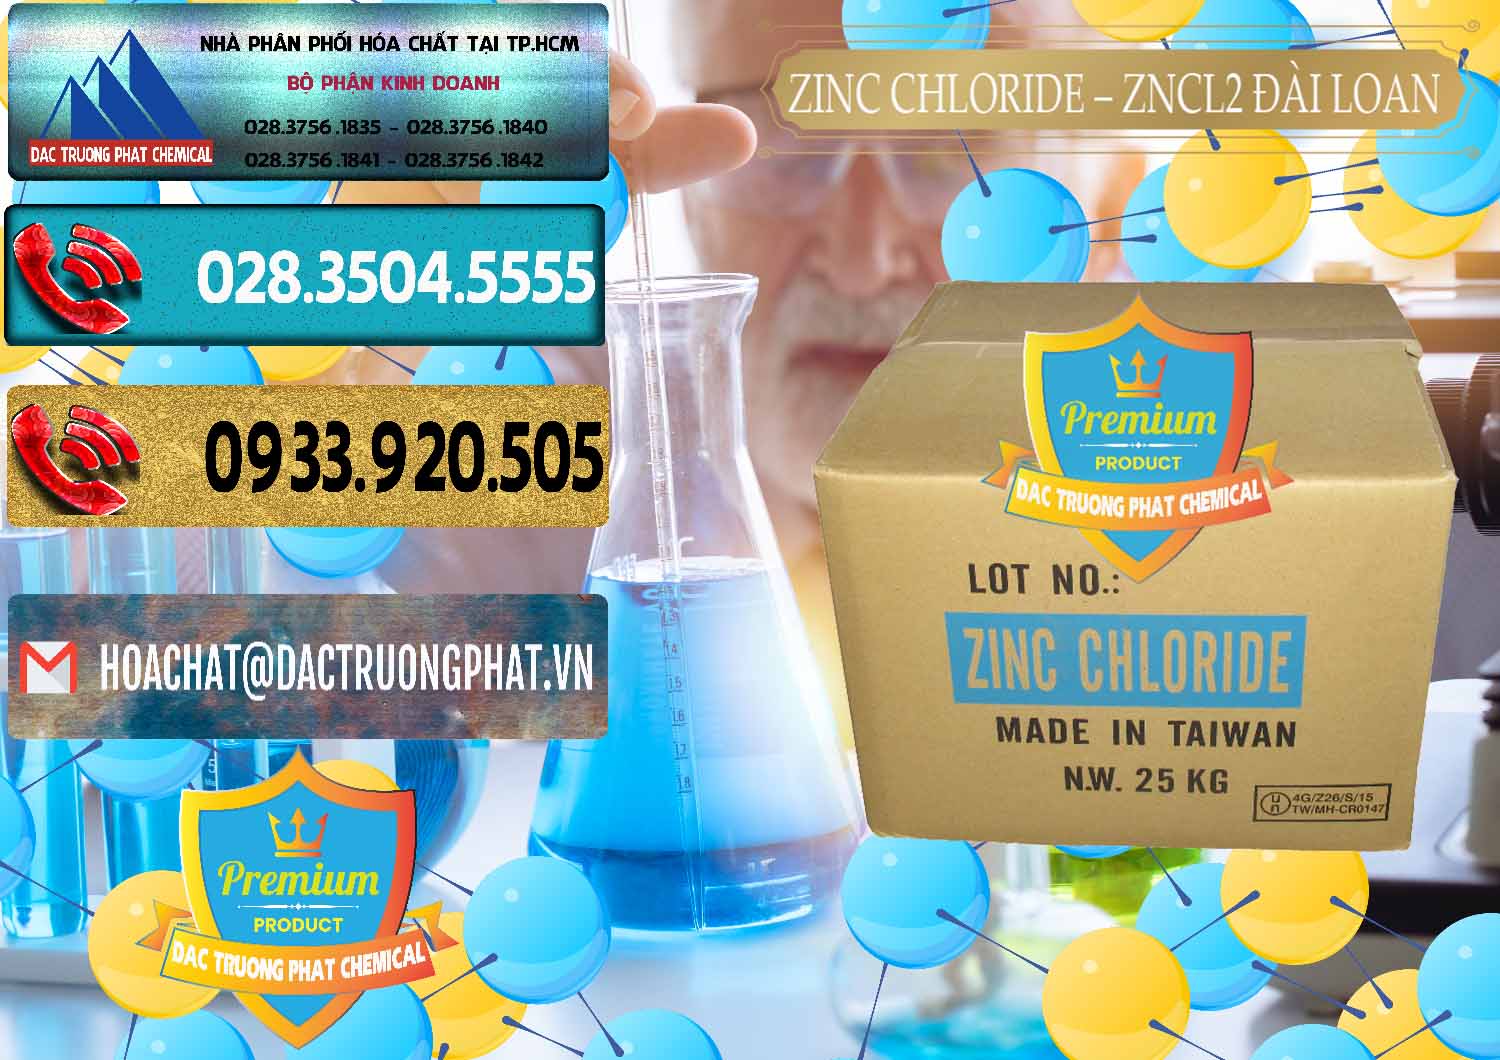 Đơn vị chuyên bán & phân phối Zinc Chloride - ZNCL2 96% Đài Loan Taiwan - 0178 - Cty phân phối và bán hóa chất tại TP.HCM - hoachatdetnhuom.com